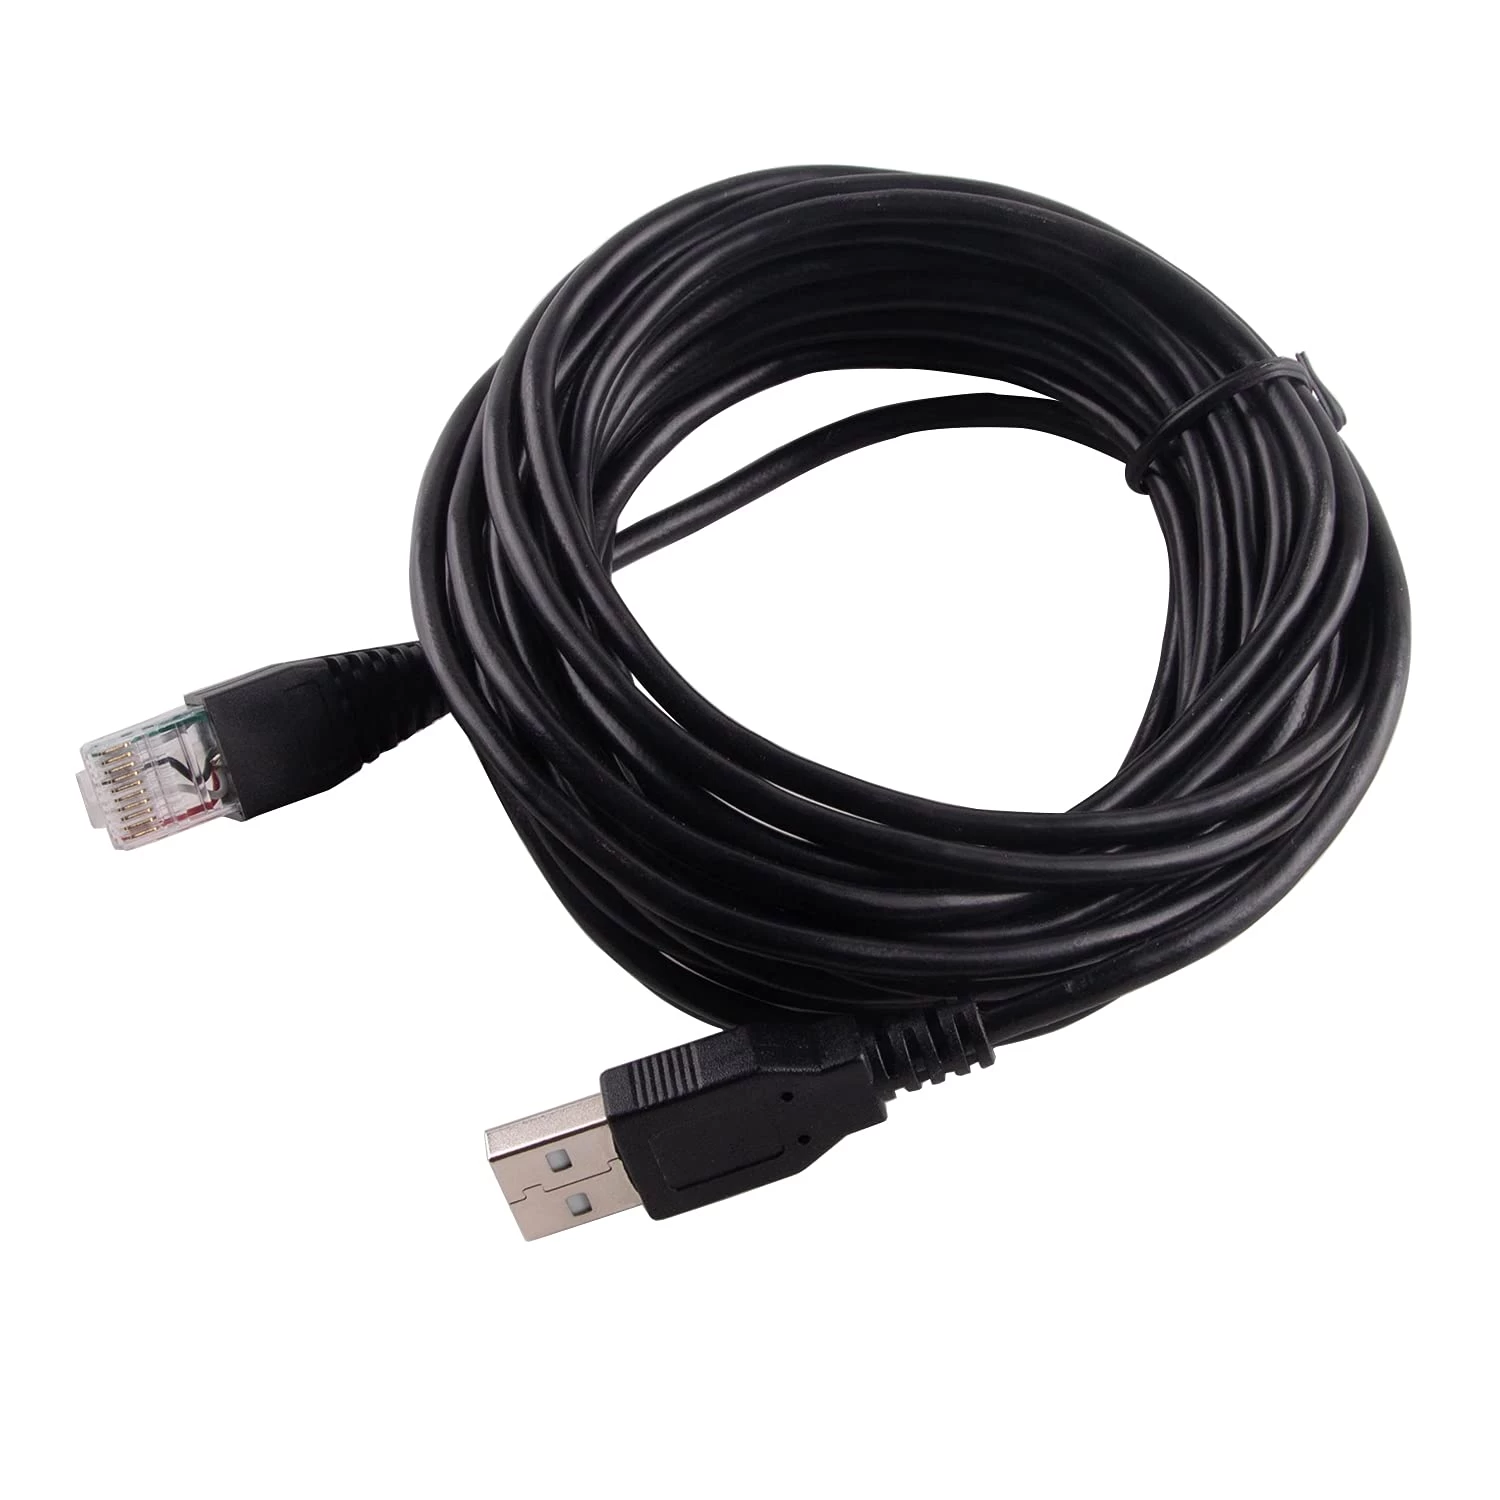 中国 用于智能 UPS 的 APC 电缆 USB 转 RJ50 控制电缆 制造商